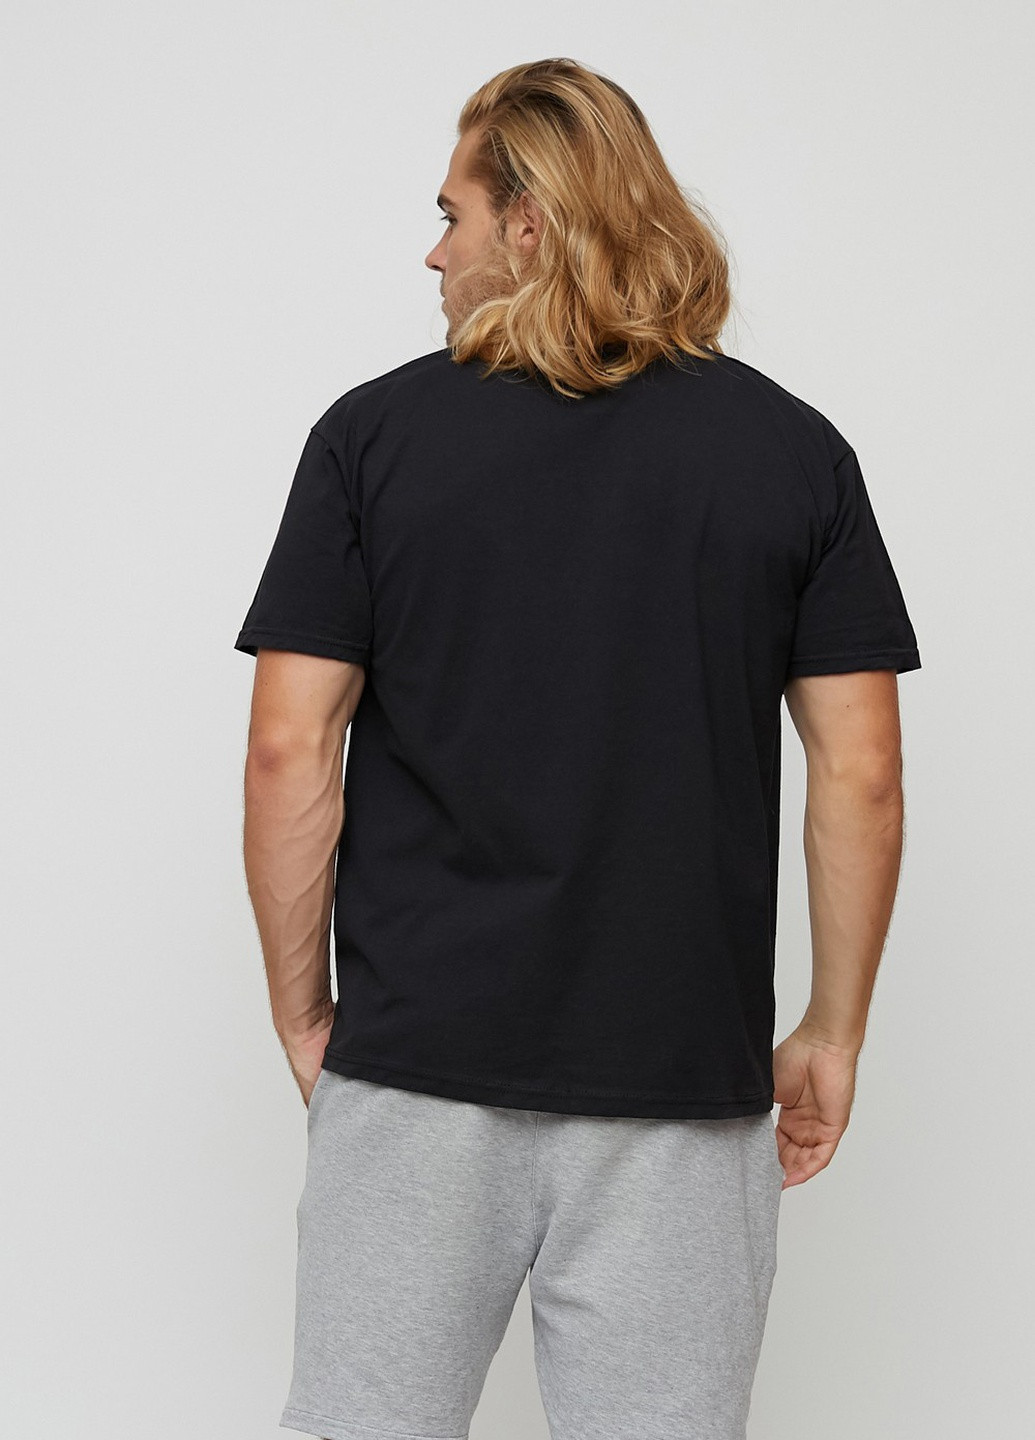 Черная футболка мужская basic черная с принтом YAPPI